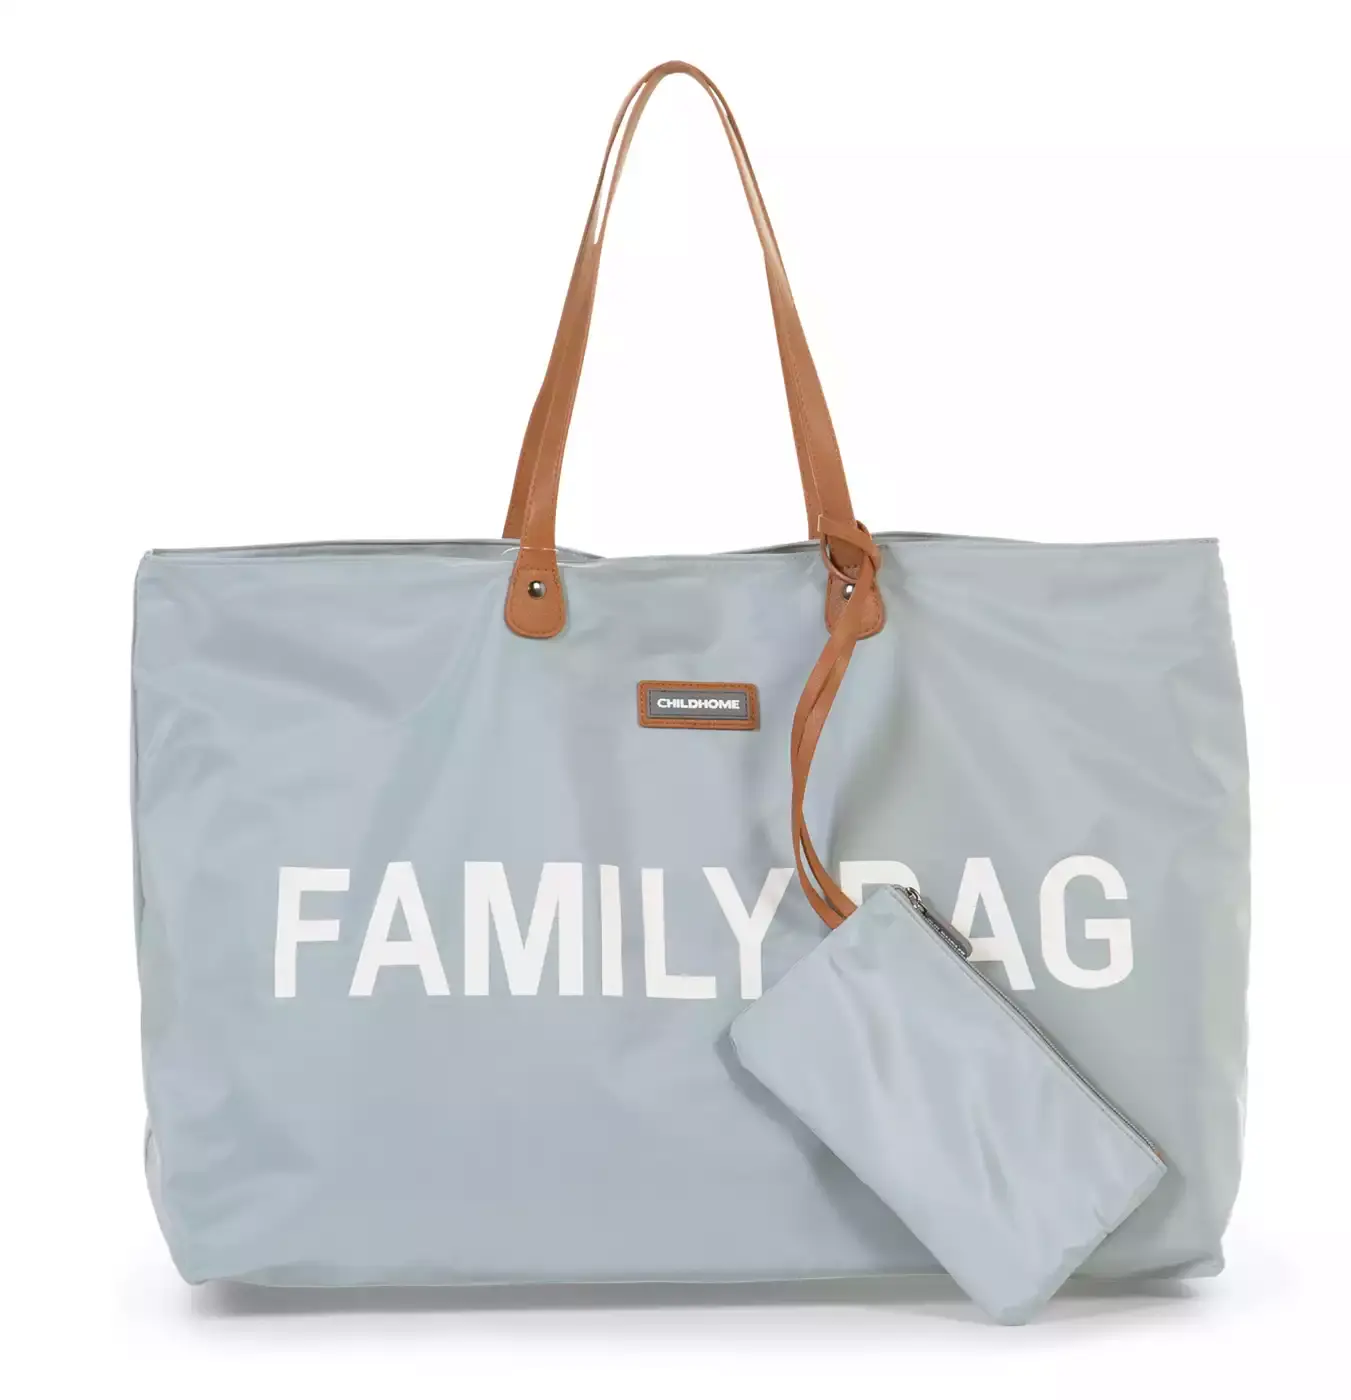 Family Bag Grau / Offwhite CHILDHOME Grau Grau 2000580655957 1